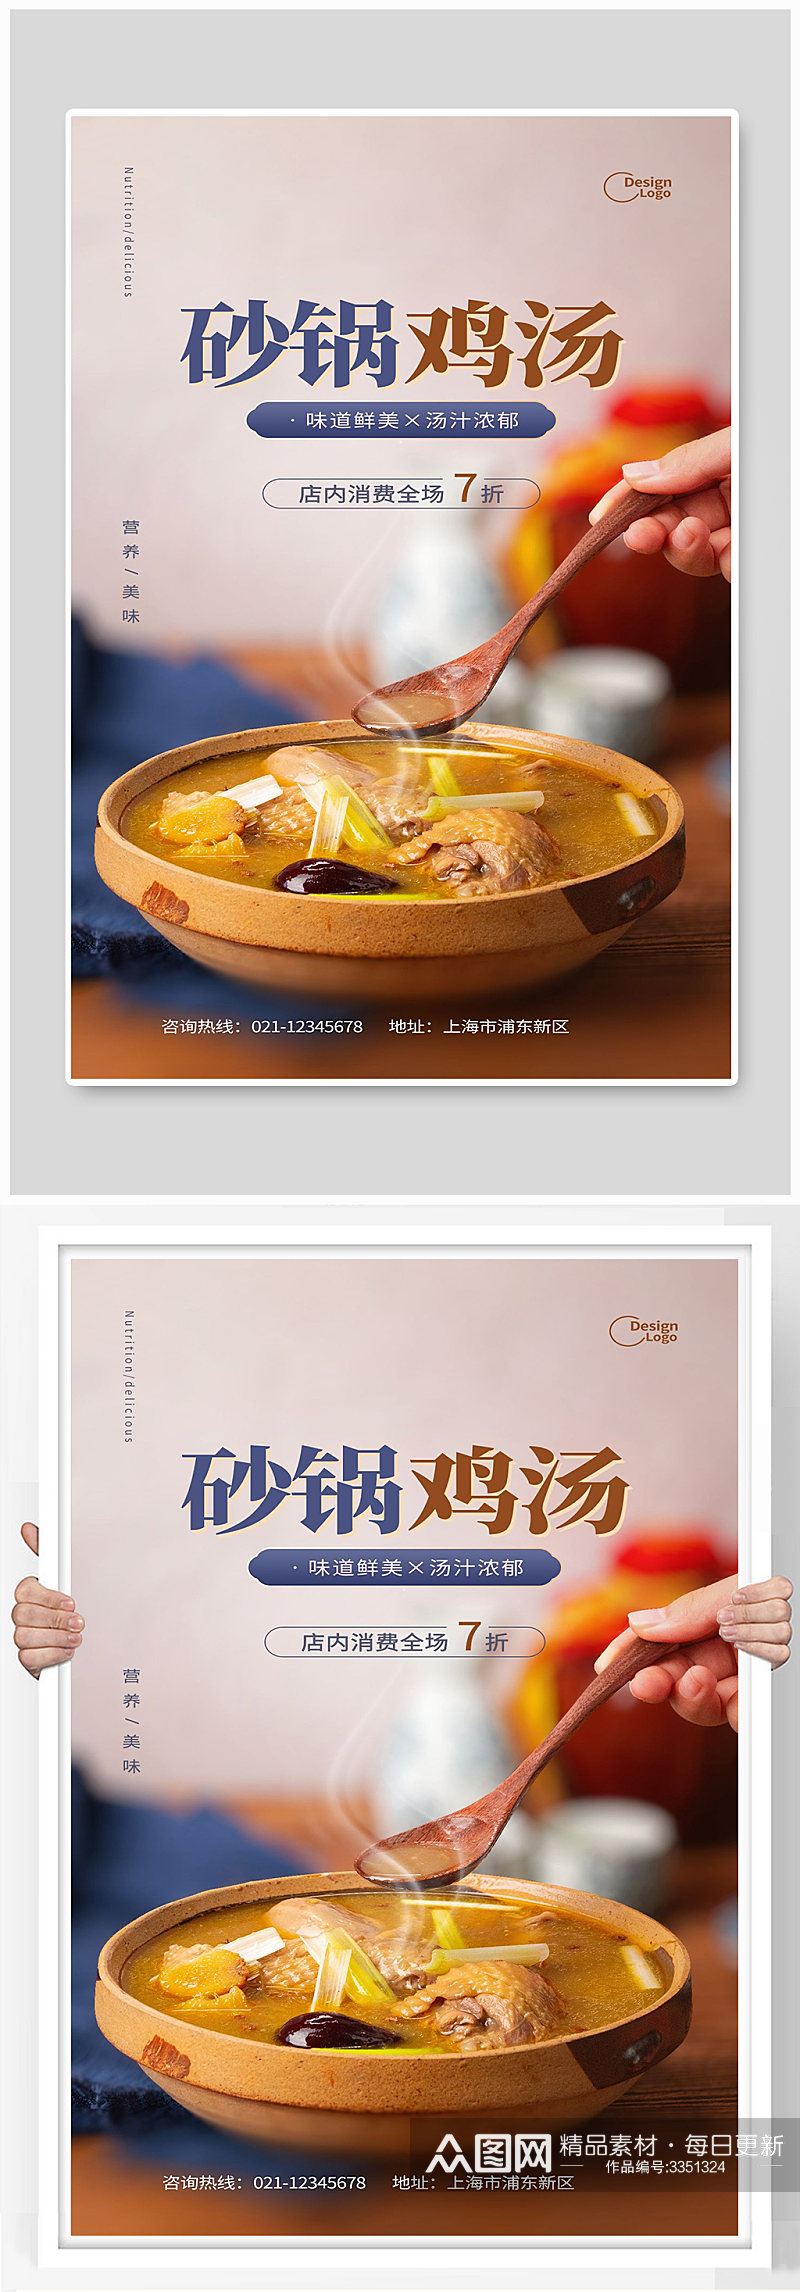 砂锅鸡汤香菇味道鲜美汤汁美食宣传素材